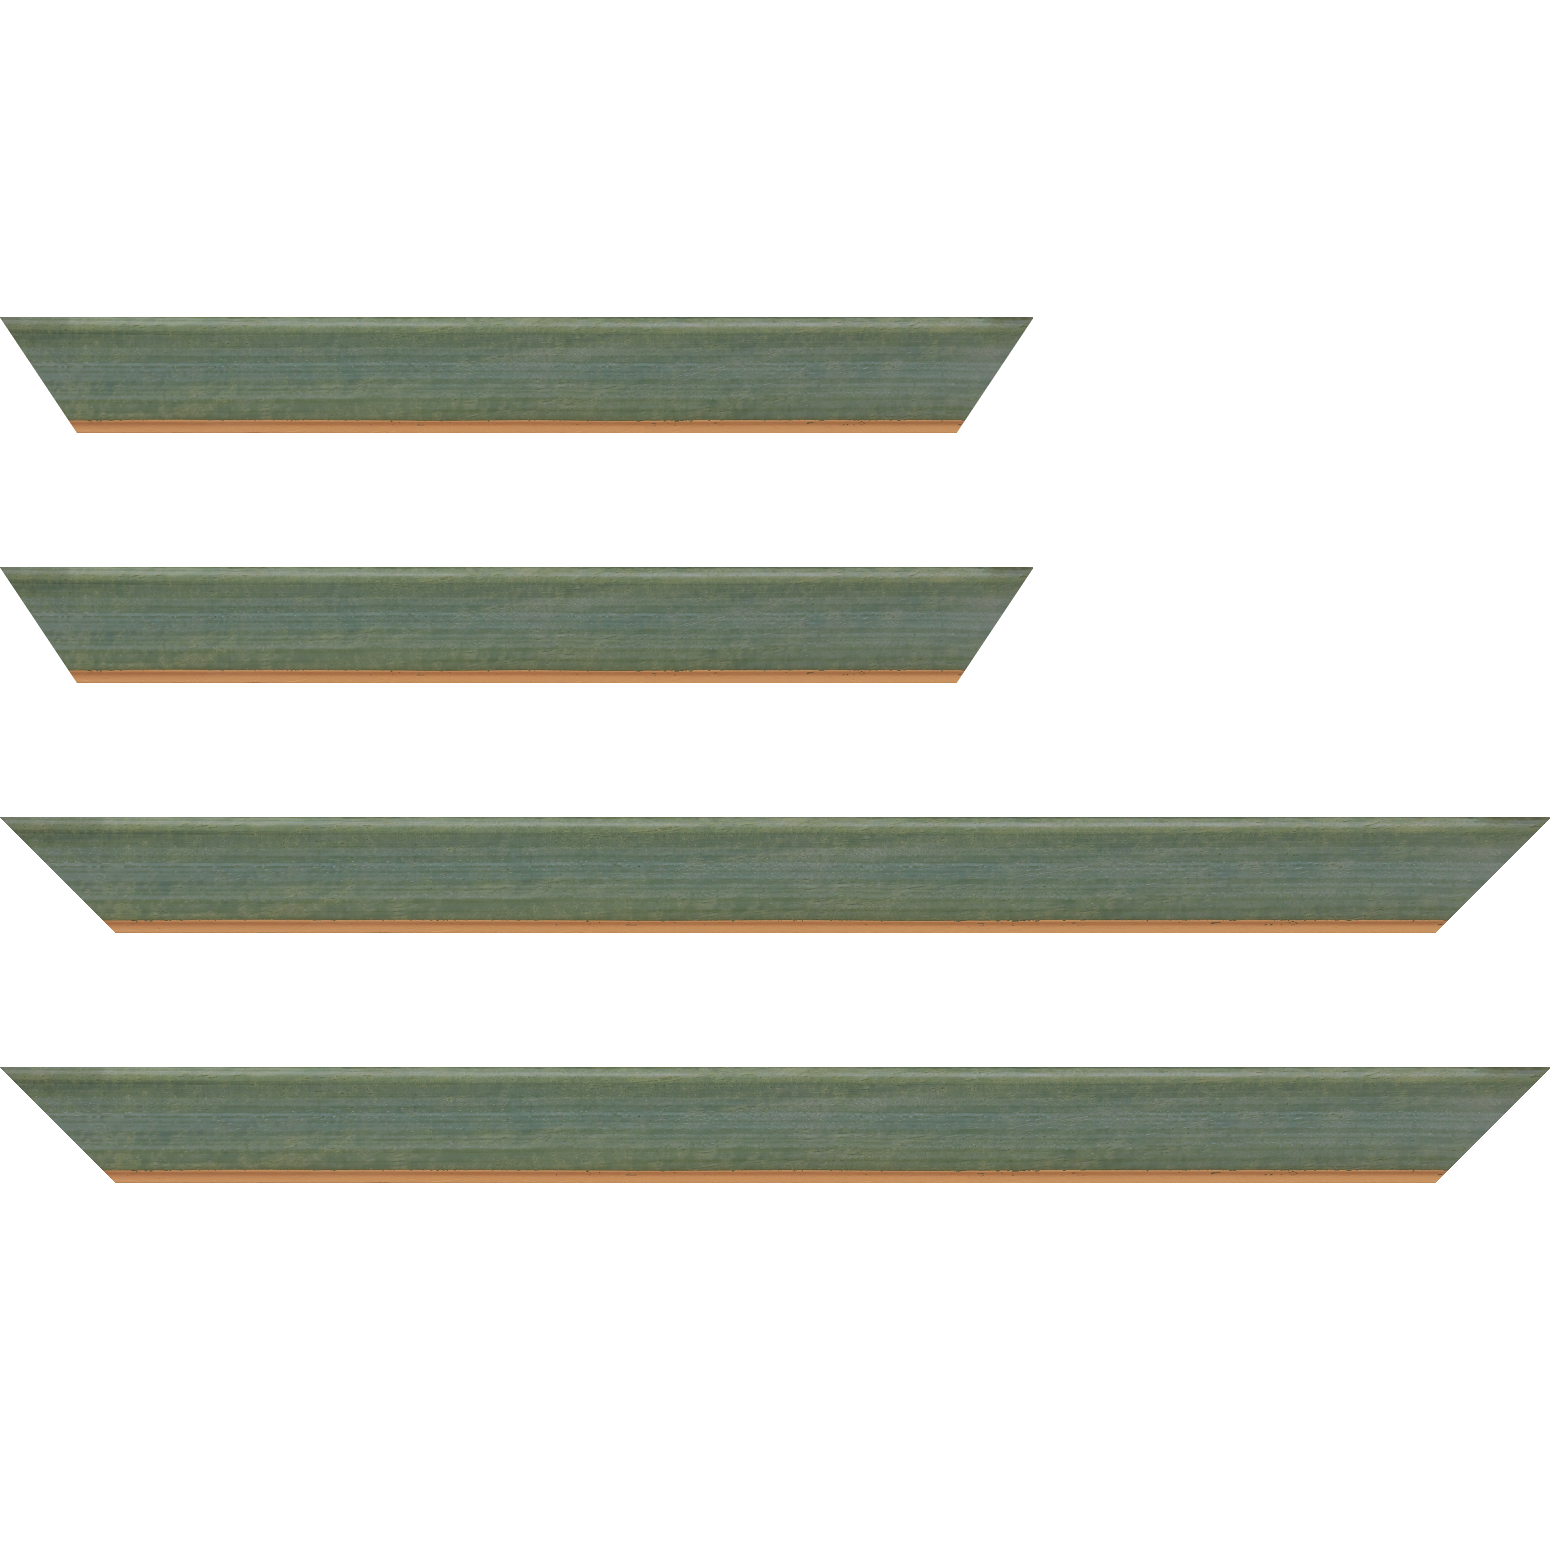 Baguette bois profil incurvé largeur 3.9cm couleur vert amande satiné filet or - 24x30